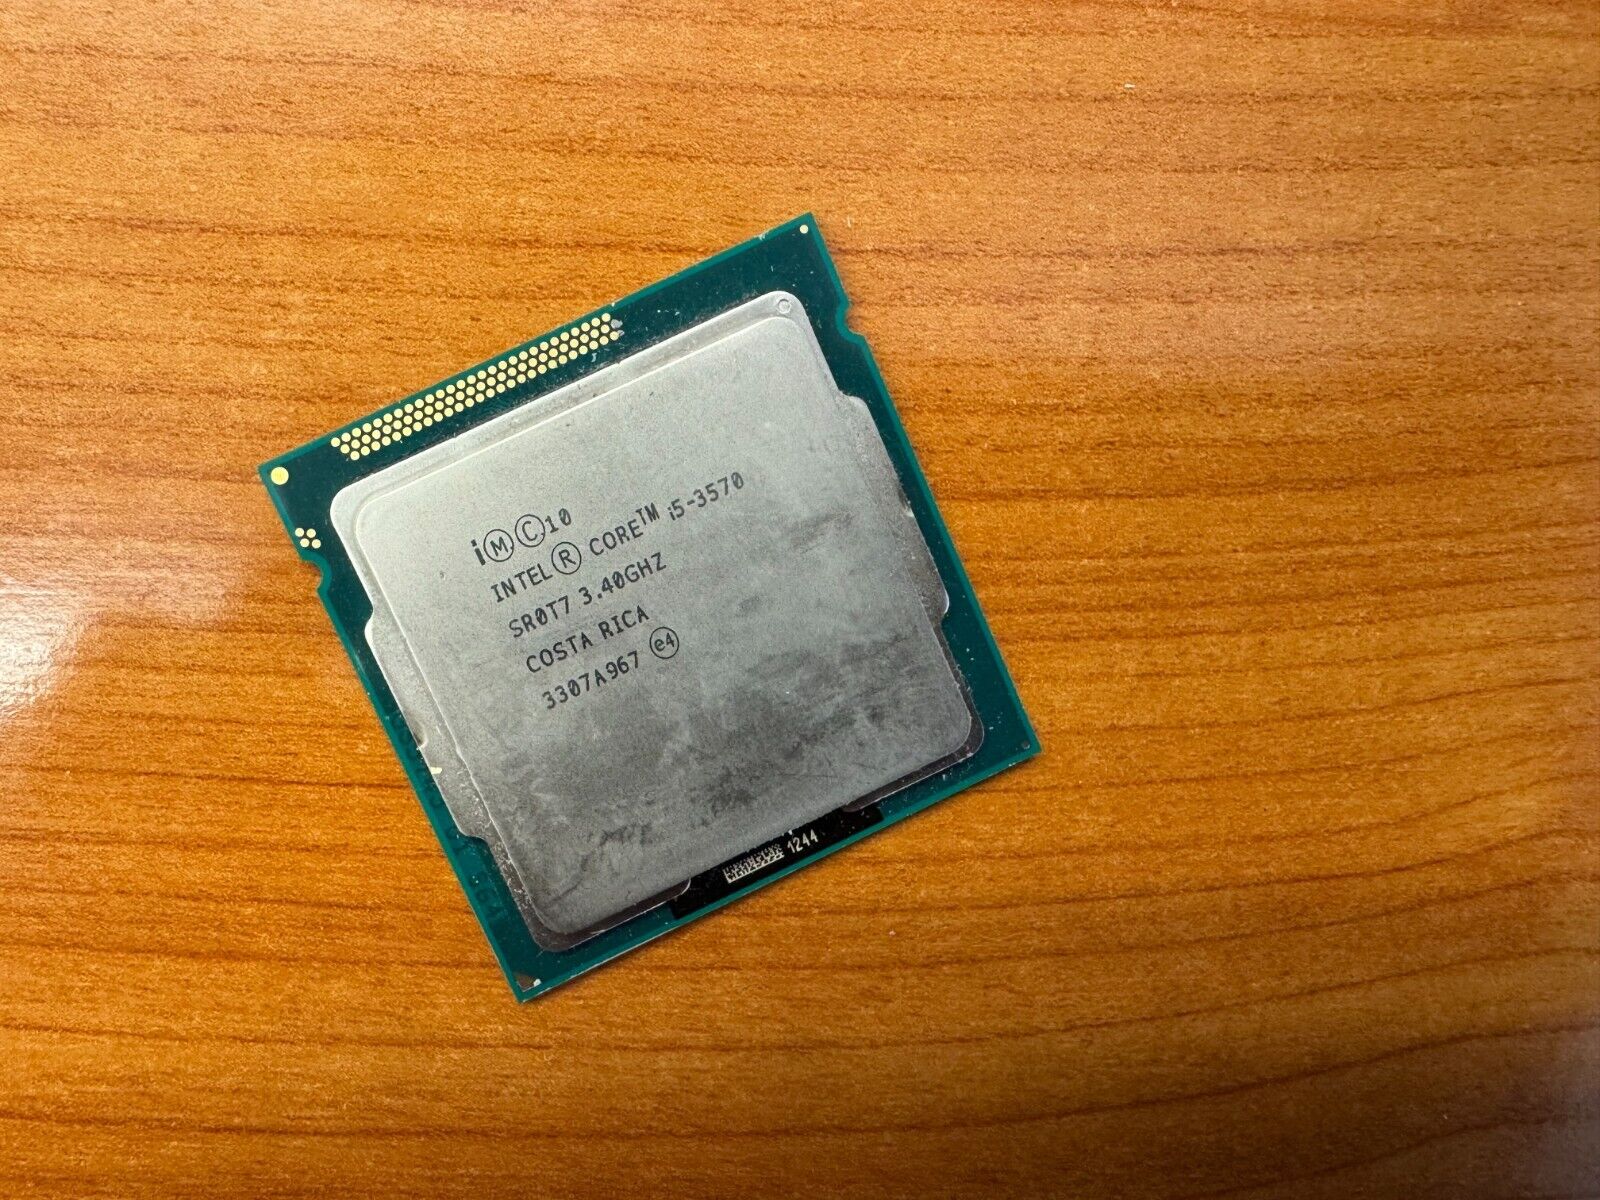 Intel Core i5-3570, SR0T7 3.40GHz, LGA1155 Socket, 4C/4T, 6MB Cache, Desktop CPU